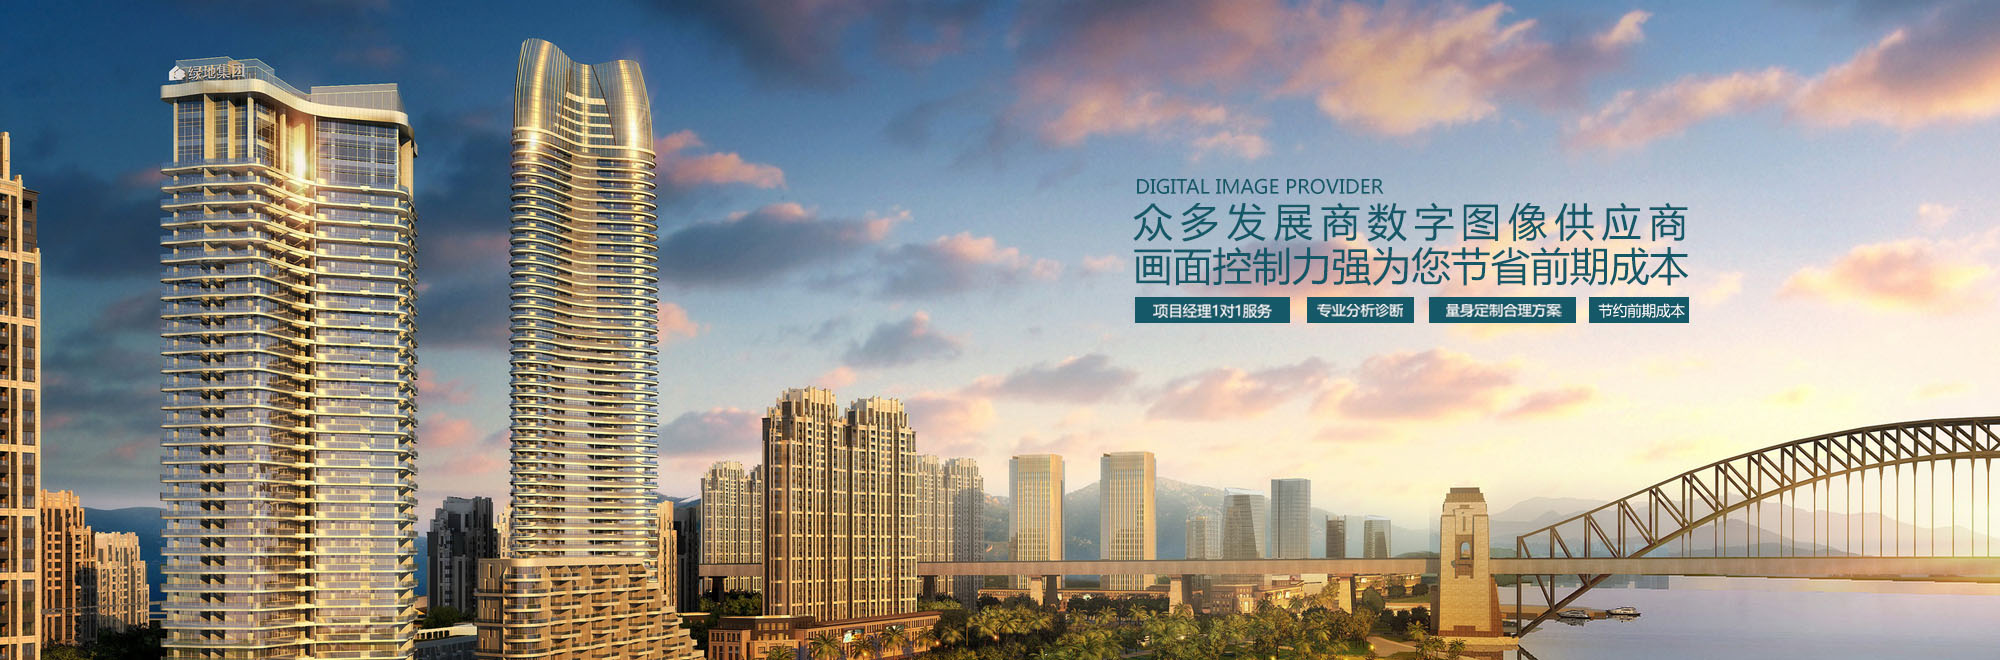 上海谷地建筑效果图公司，专注建筑效果图制作9年，提供全面建筑效果图设计方案，建筑效果图制作报价，建筑效果图咨询，建筑效果图制作热线：4000314116